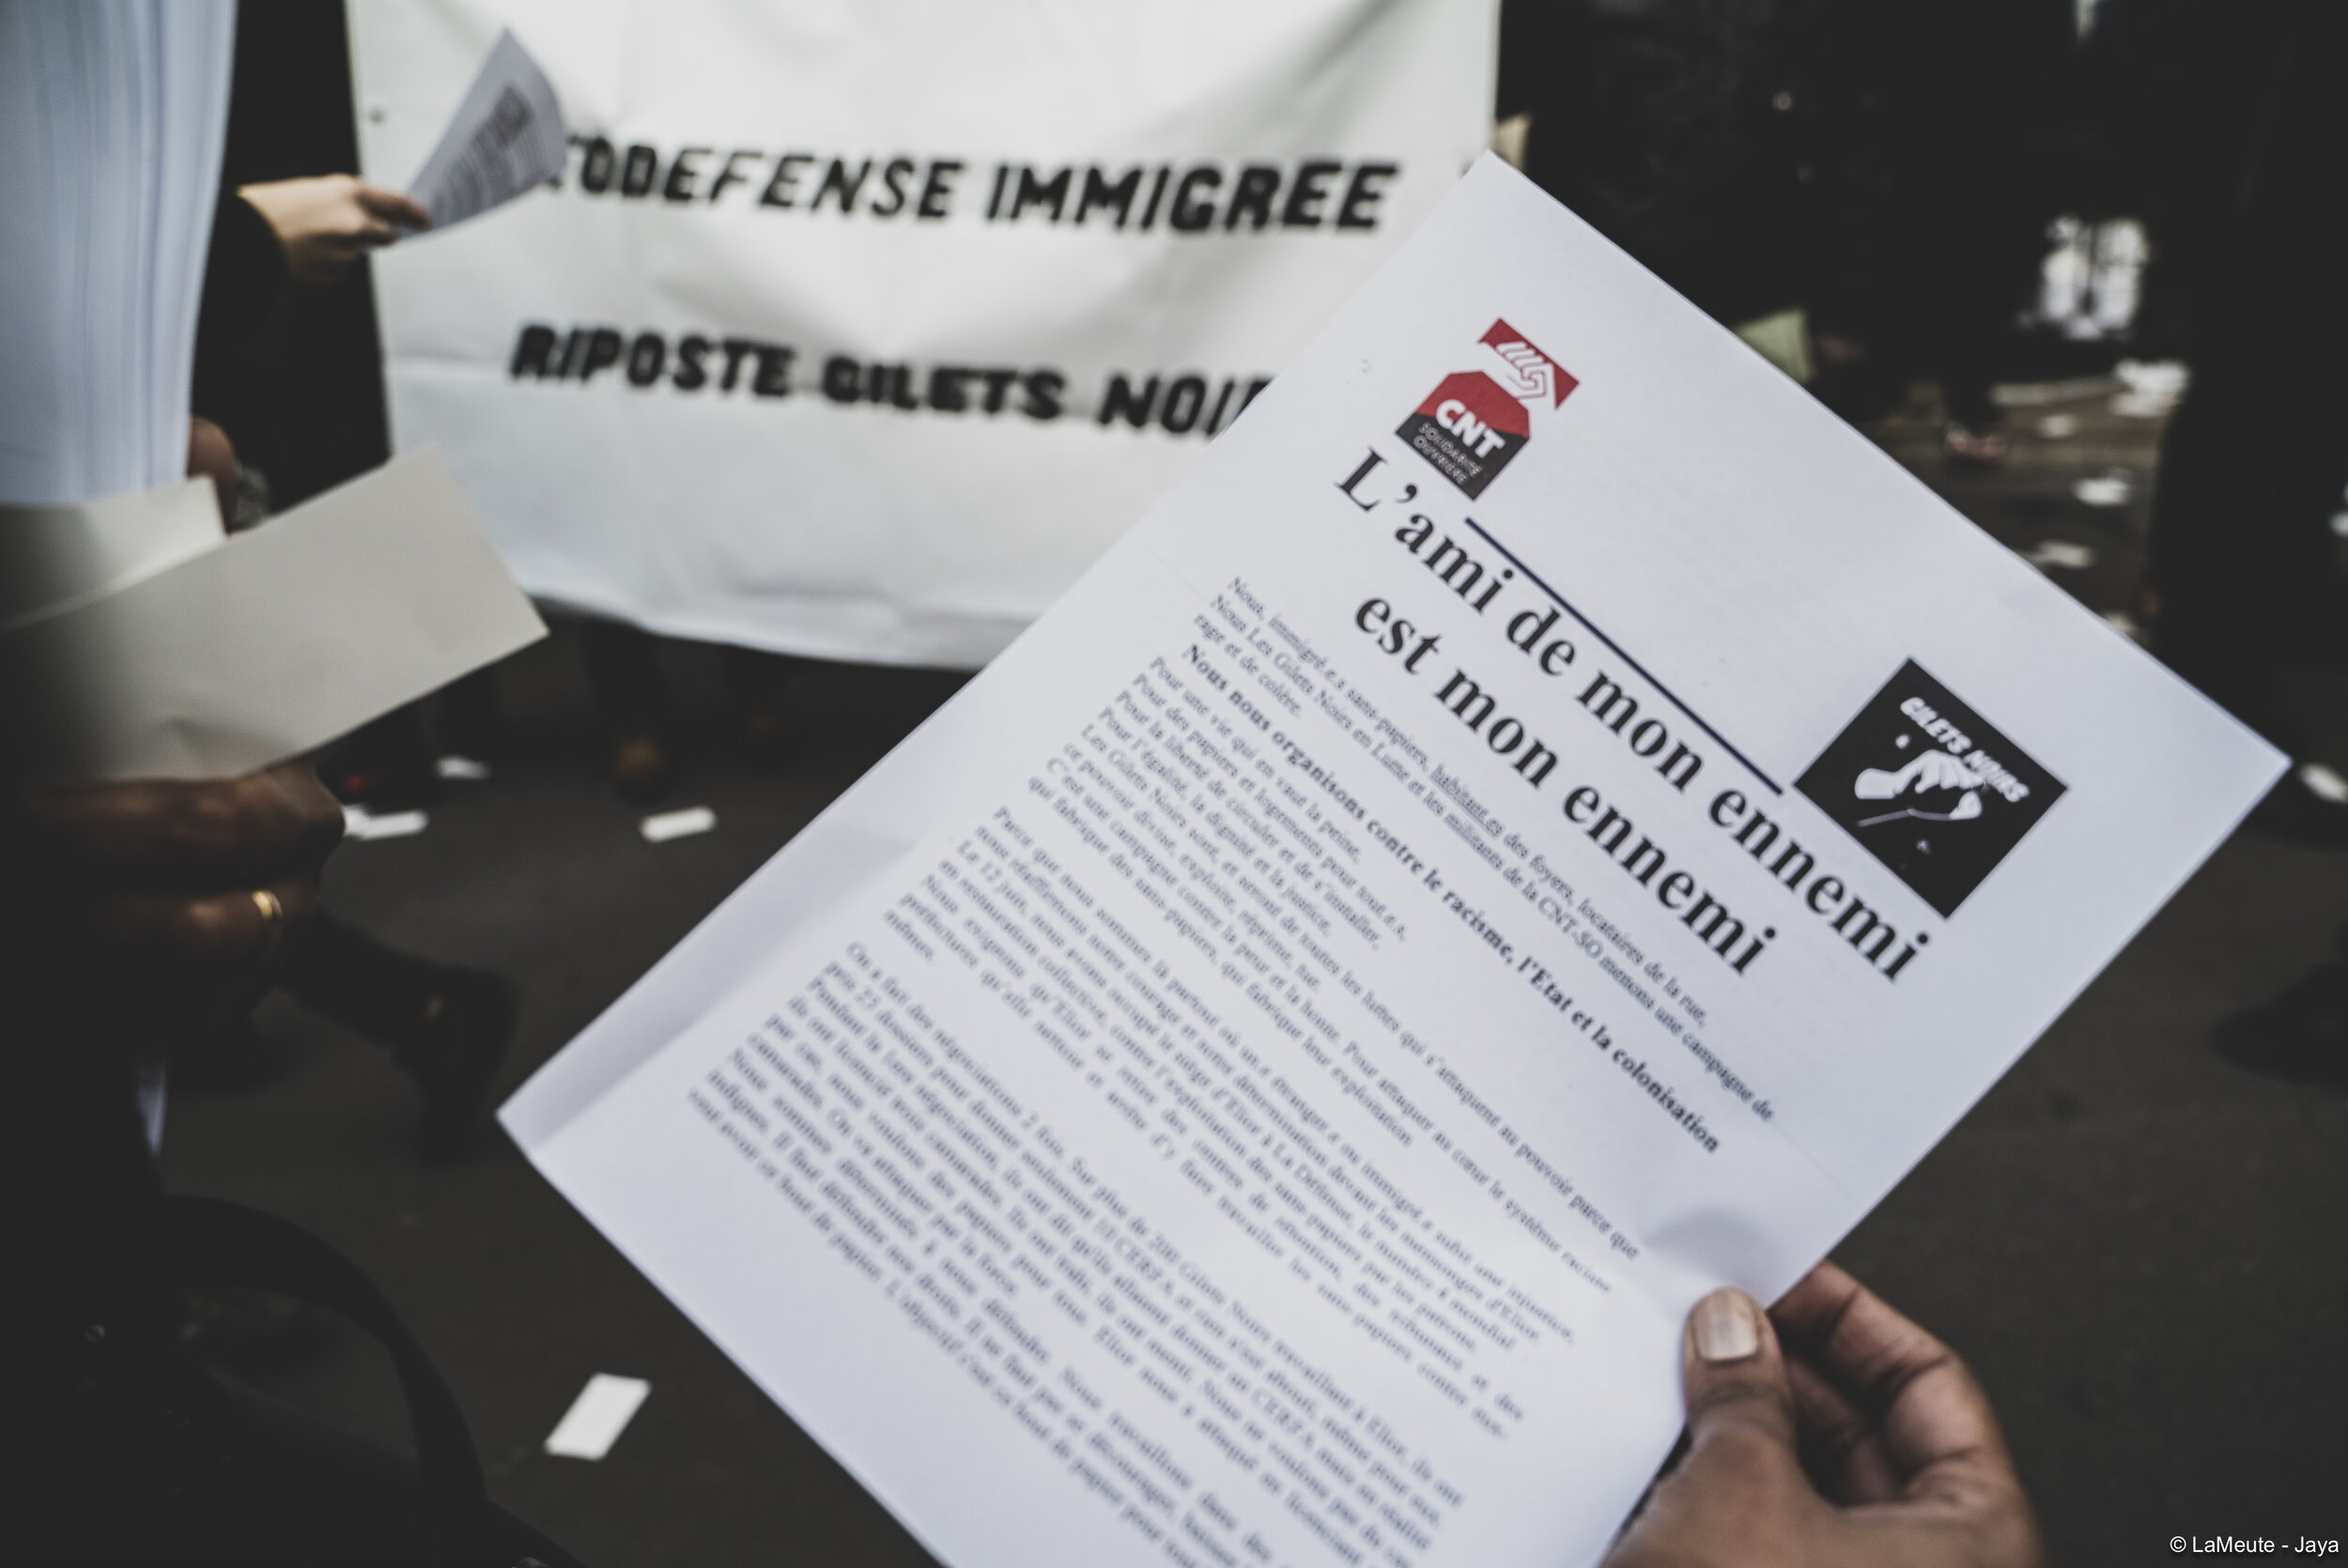   Le communiqué distribué aux passant-es devant la boutique Nespresso, client d’Elior, occupée par les Gilets Noirs, ce mardi 3 décembre 2019.  ©LaMeute - Jaya 